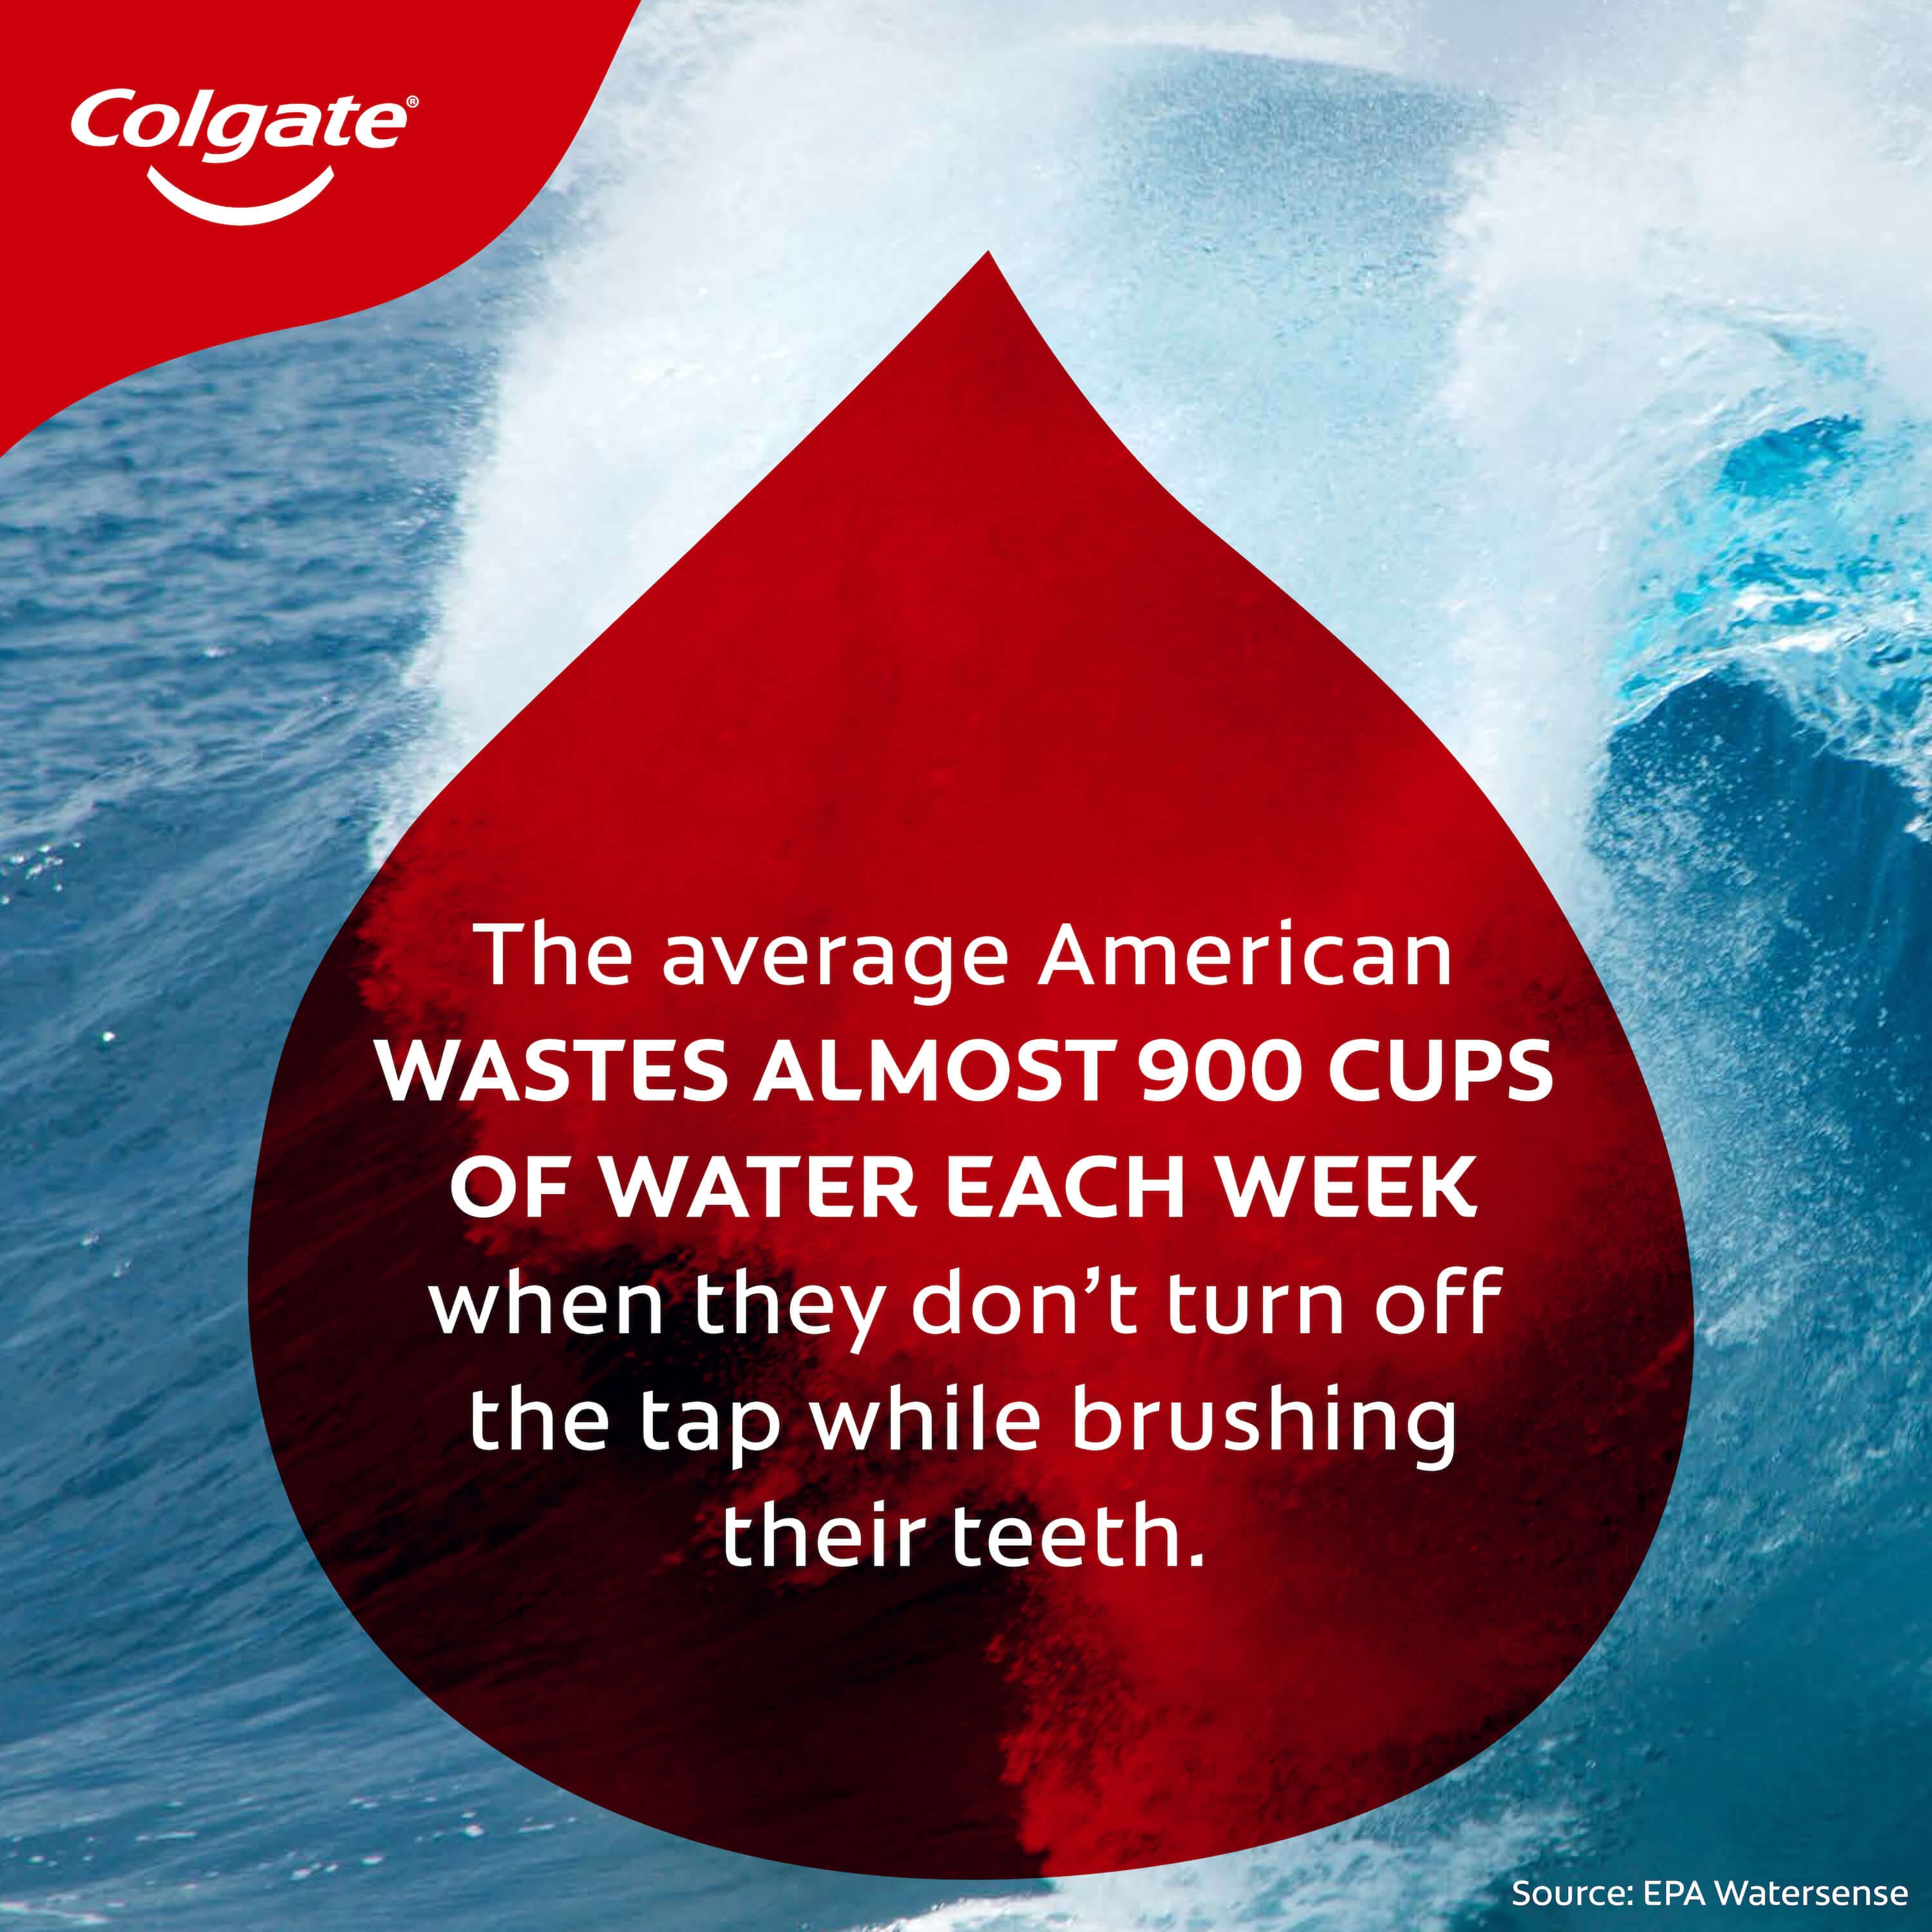 Colgate water saving facts